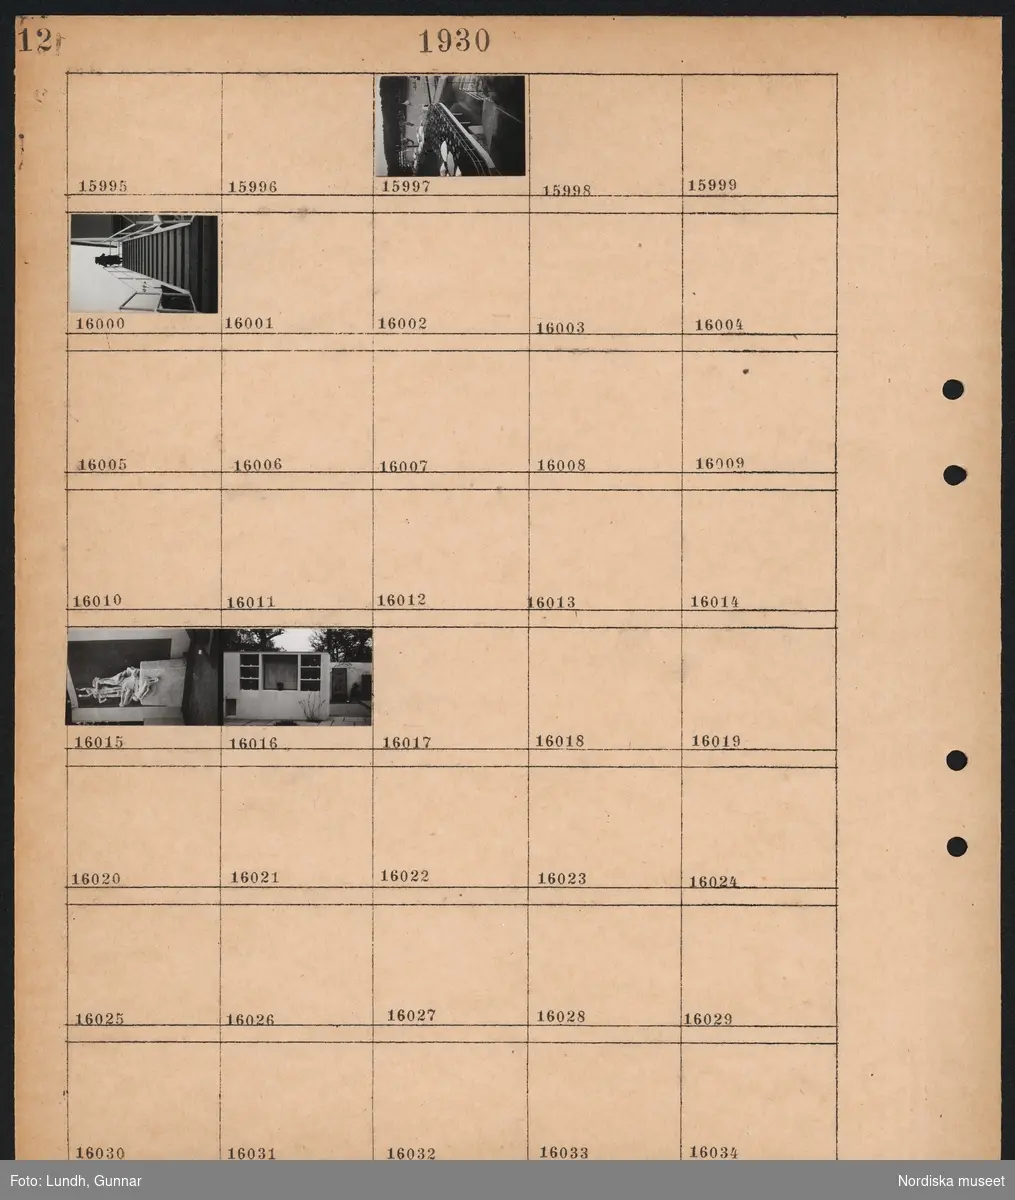 Motiv: Stockholmsutställningen 1930, Paradiset, Egna hem, Utsikt från pressläktaren;
Vy över utställningen, person går i trappa, staty, kiosk för försäljning.